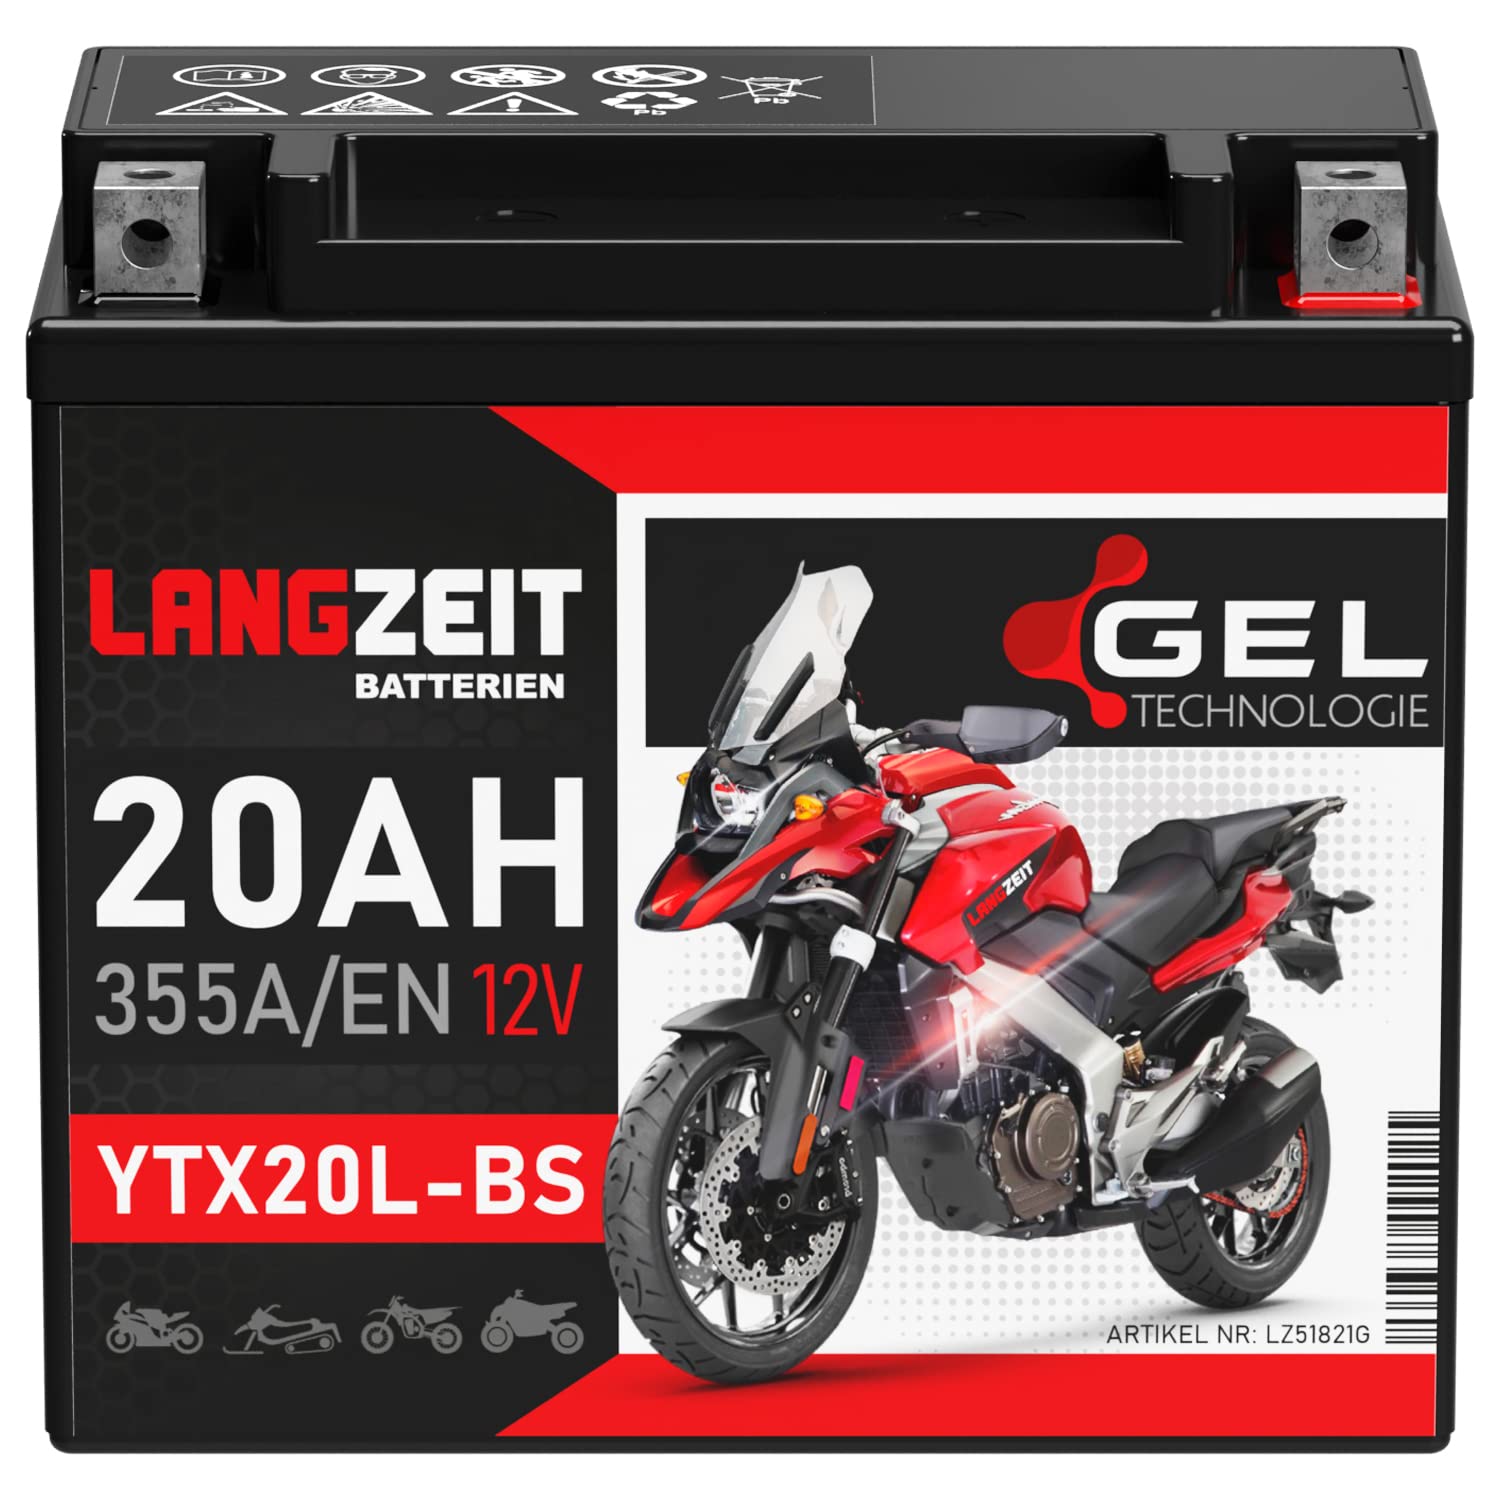 LANGZEIT YTX20L-BS GEL Motorradbatterie 12V 20Ah 355A/EN GEL Batterie 12V 51821 GTX20L-BS CTX20L-BS doppelte Lebensdauer vorgeladen auslaufsicher wartungsfrei von LANGZEIT Batterien